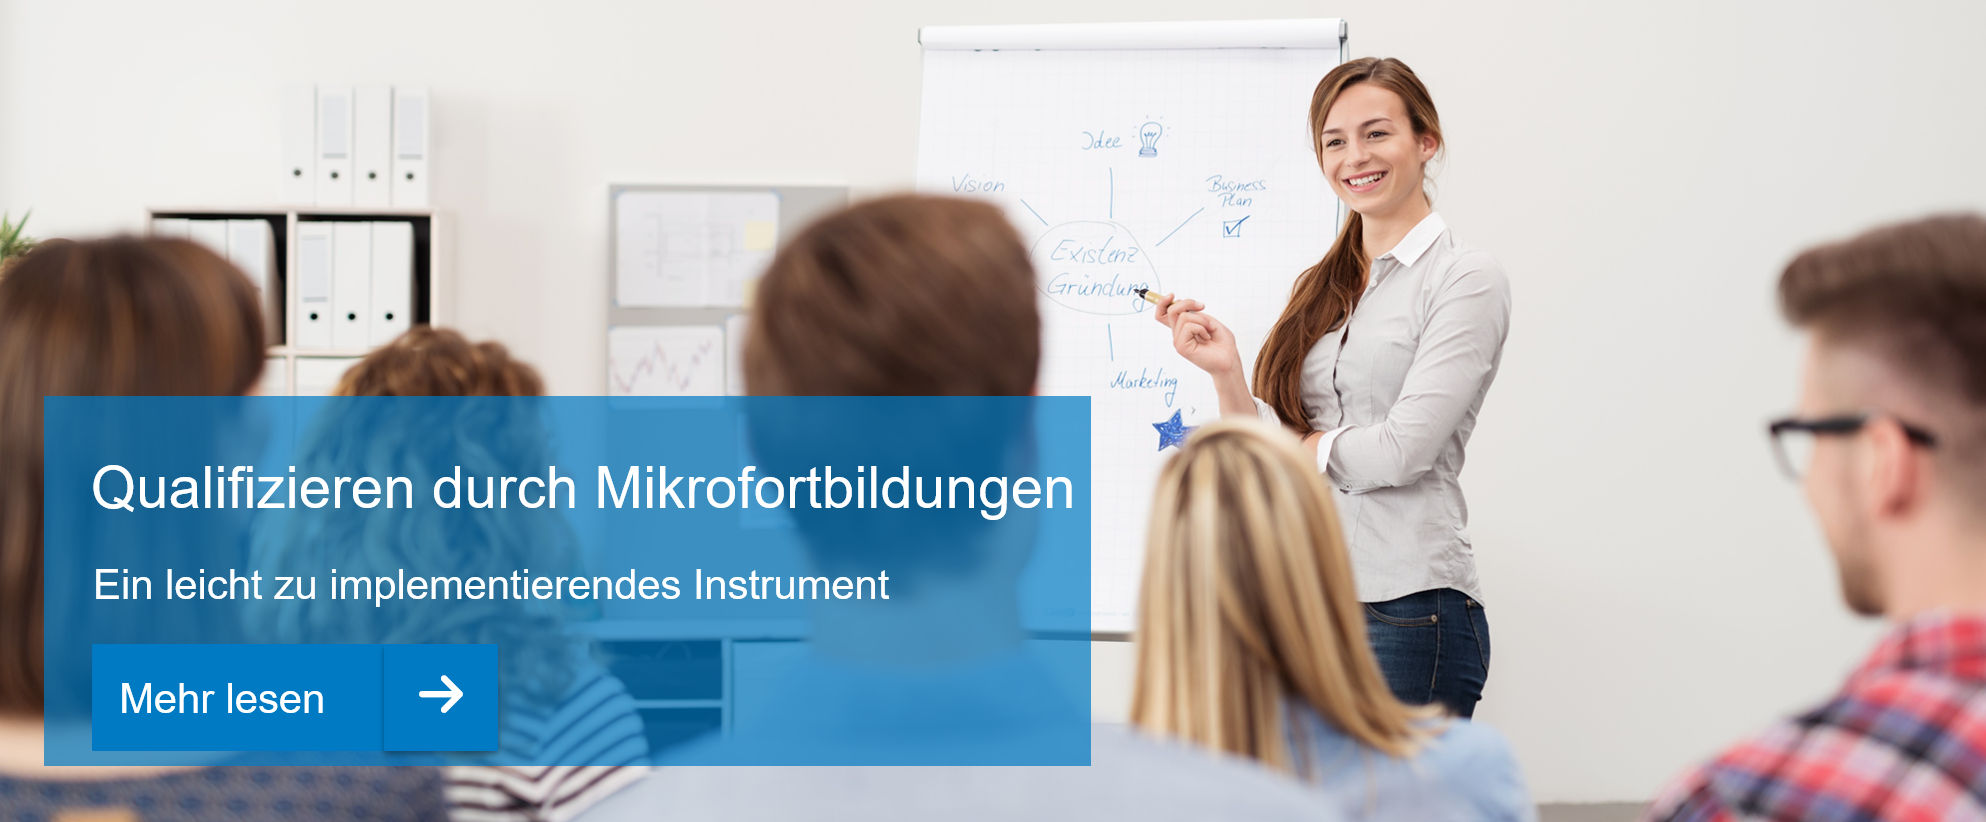 Qualifizieren durch Mikrofortbildungen - Ein niedrigschwelliges und leicht zu implementierendes Instrument, SchulVerwaltung.de